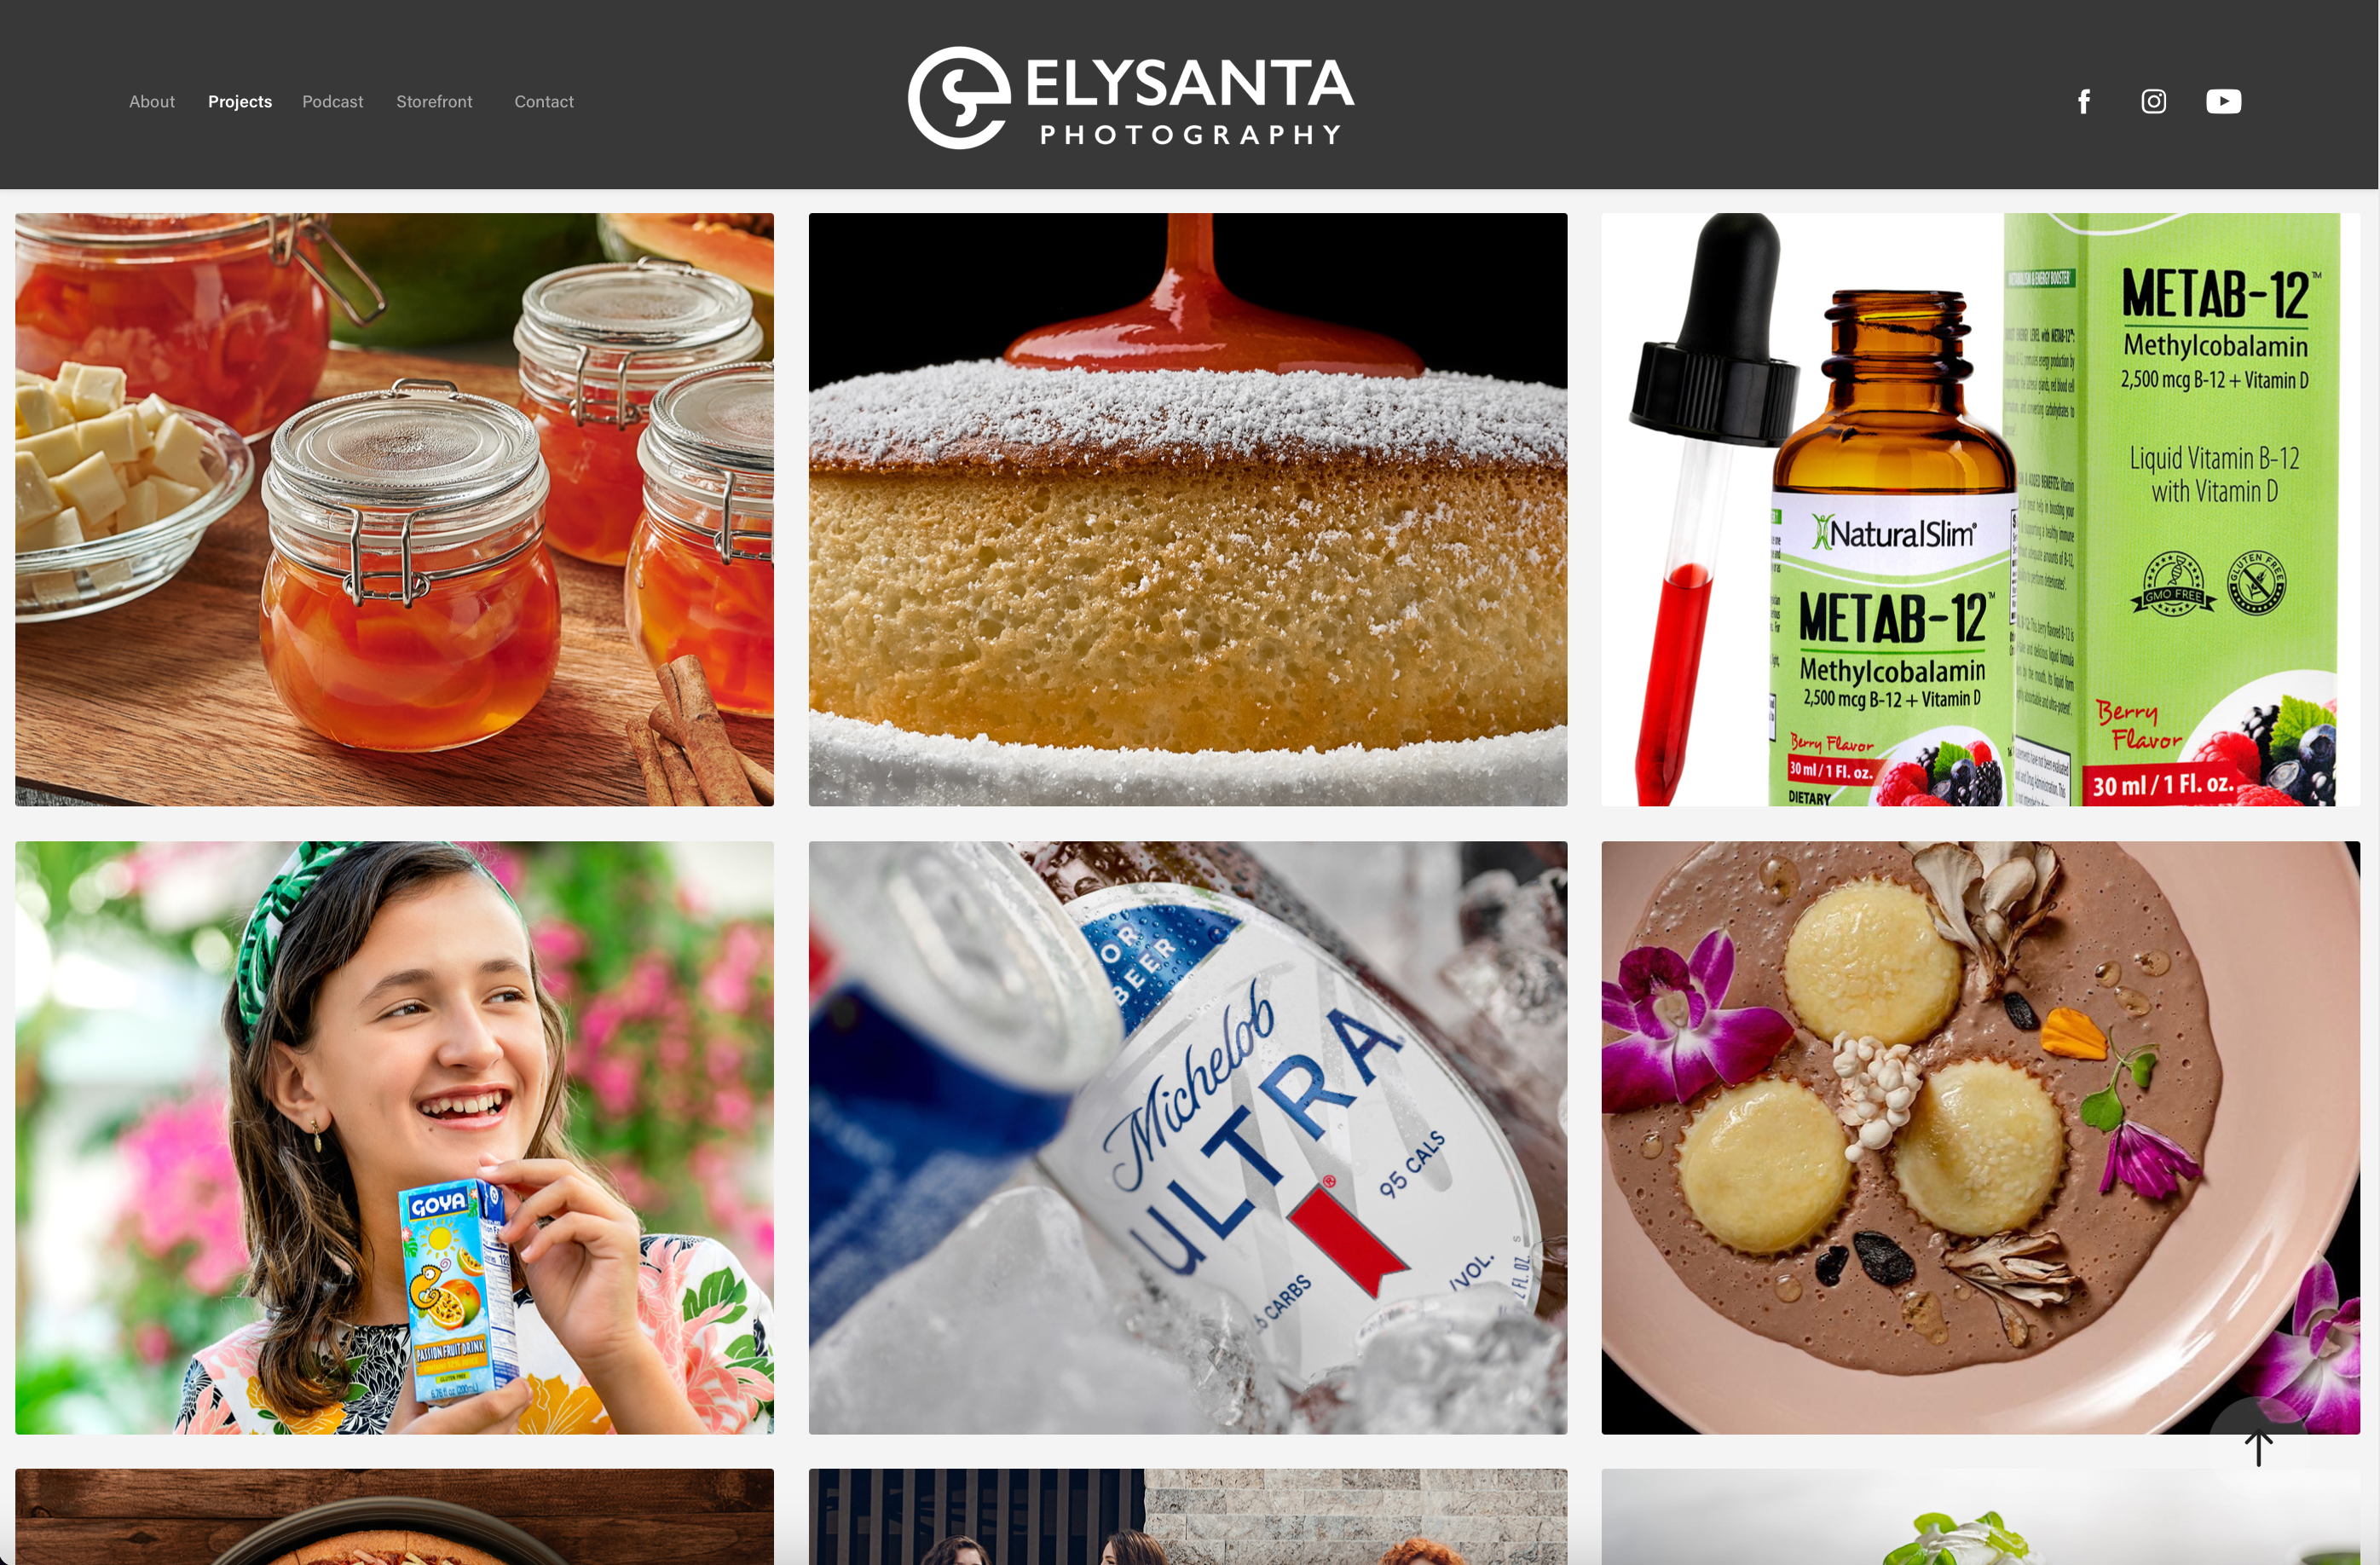 (c) Elysanta.com